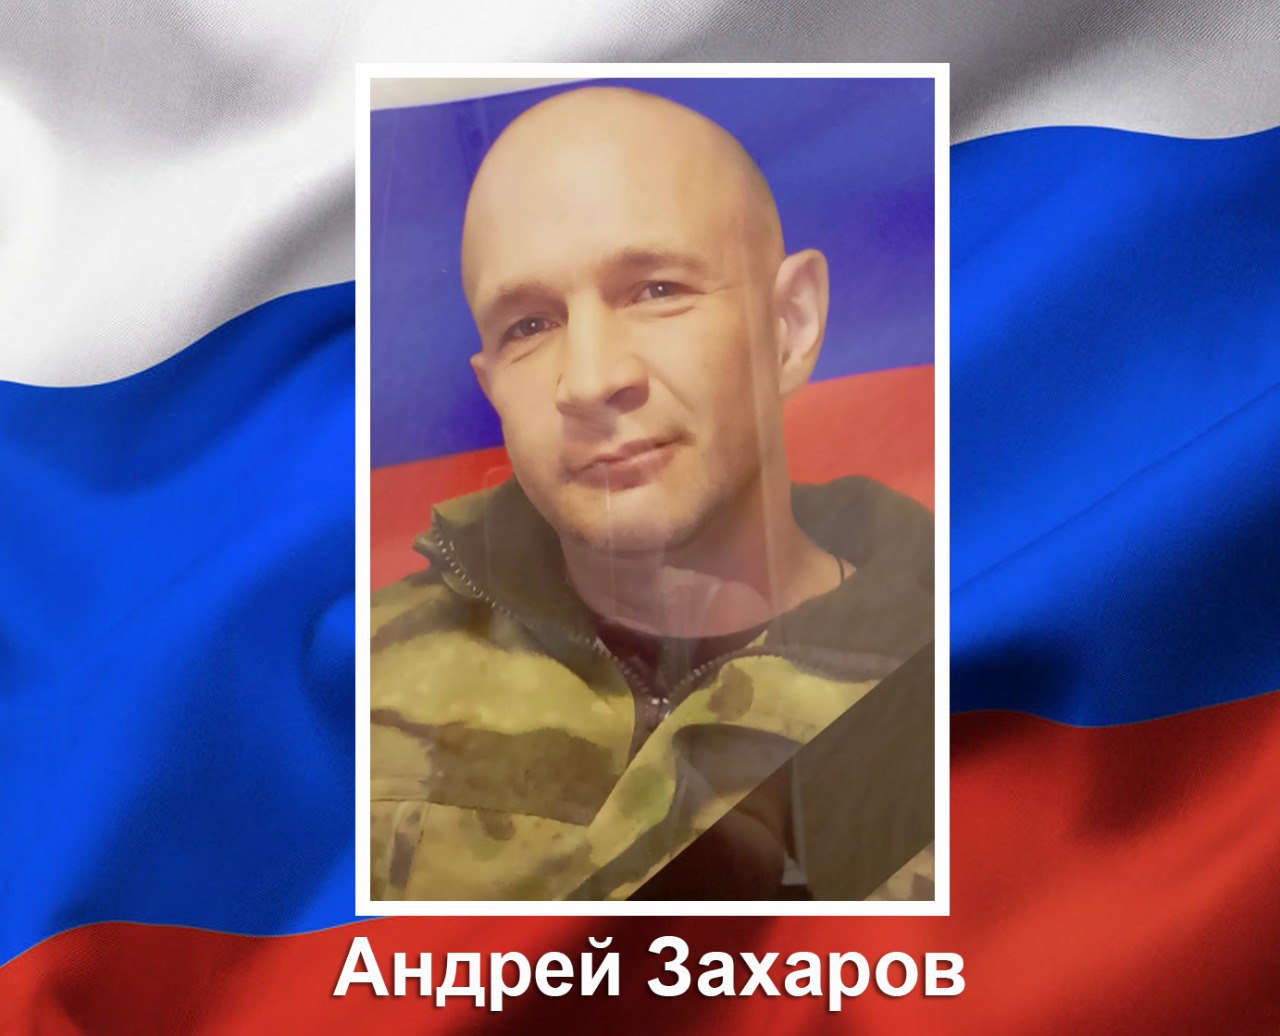 Мобилизованный Андрей Захаров из Курска погиб в ходе СВО